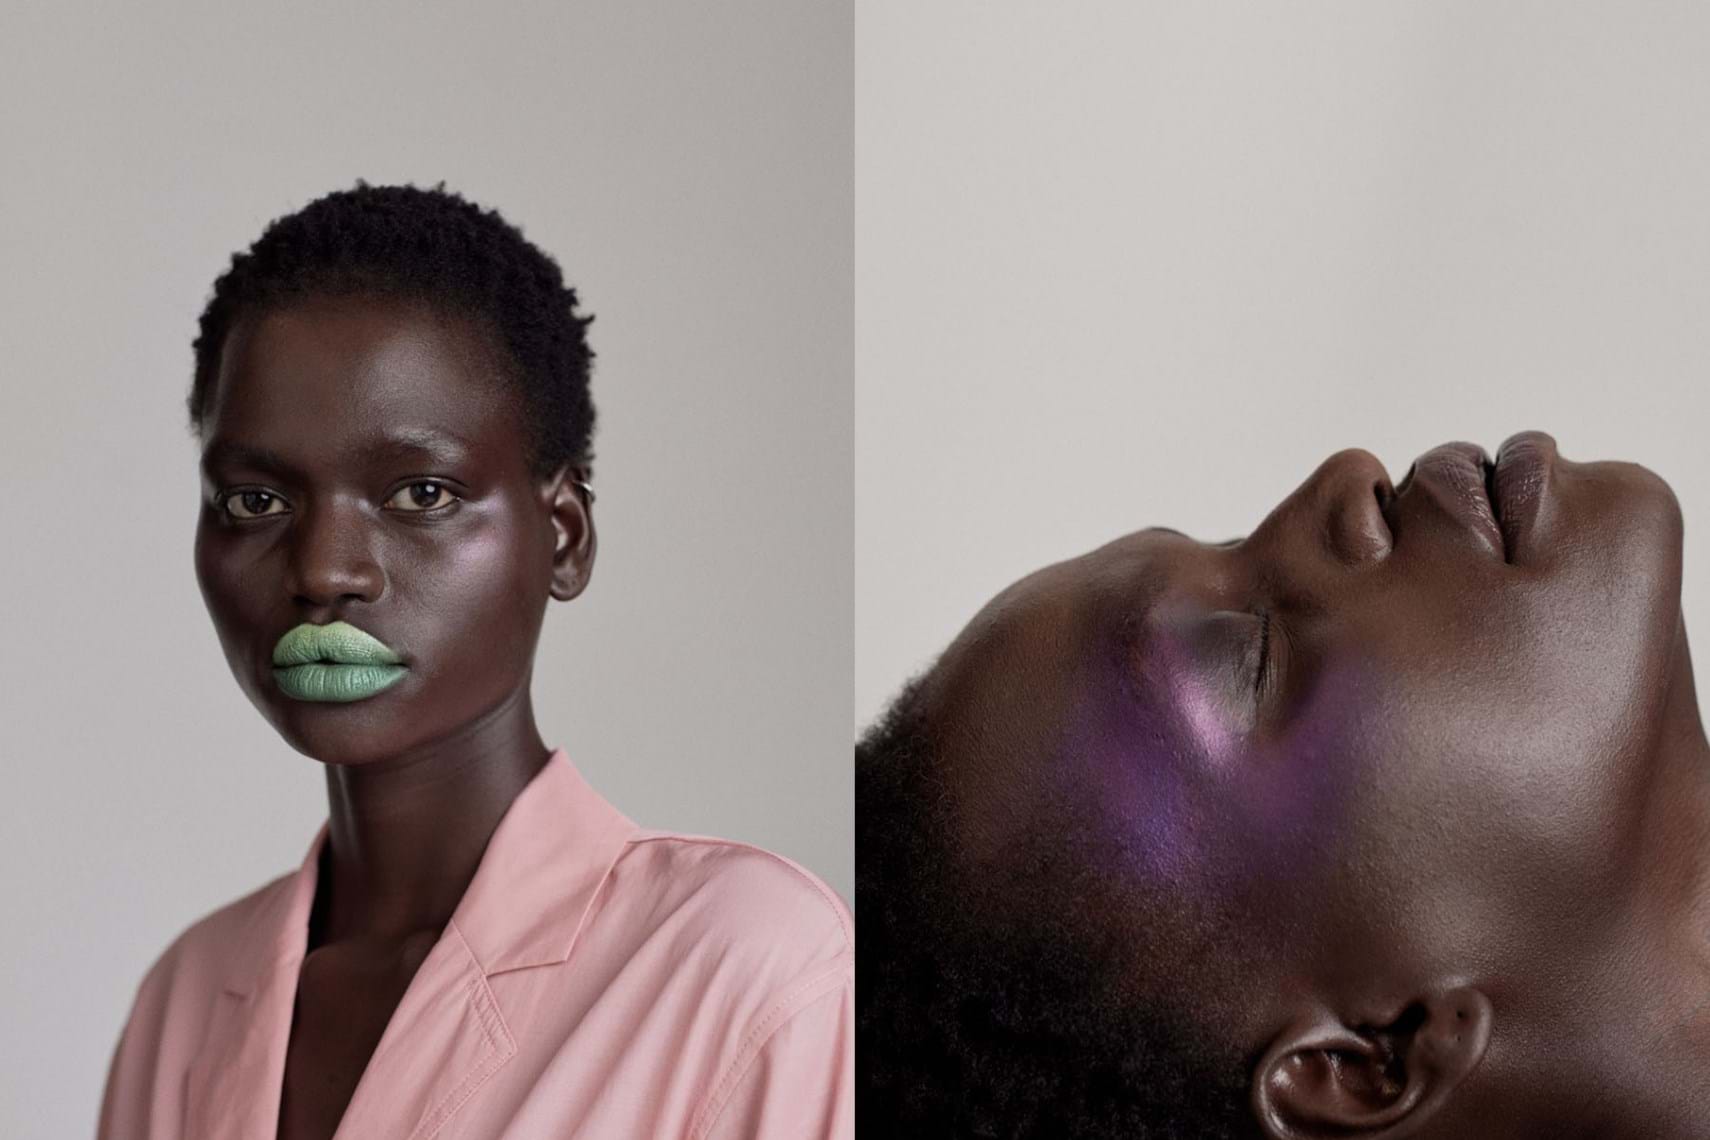 I migliori consigli dei fotografi professionisti per modificare le tonalità della pelle